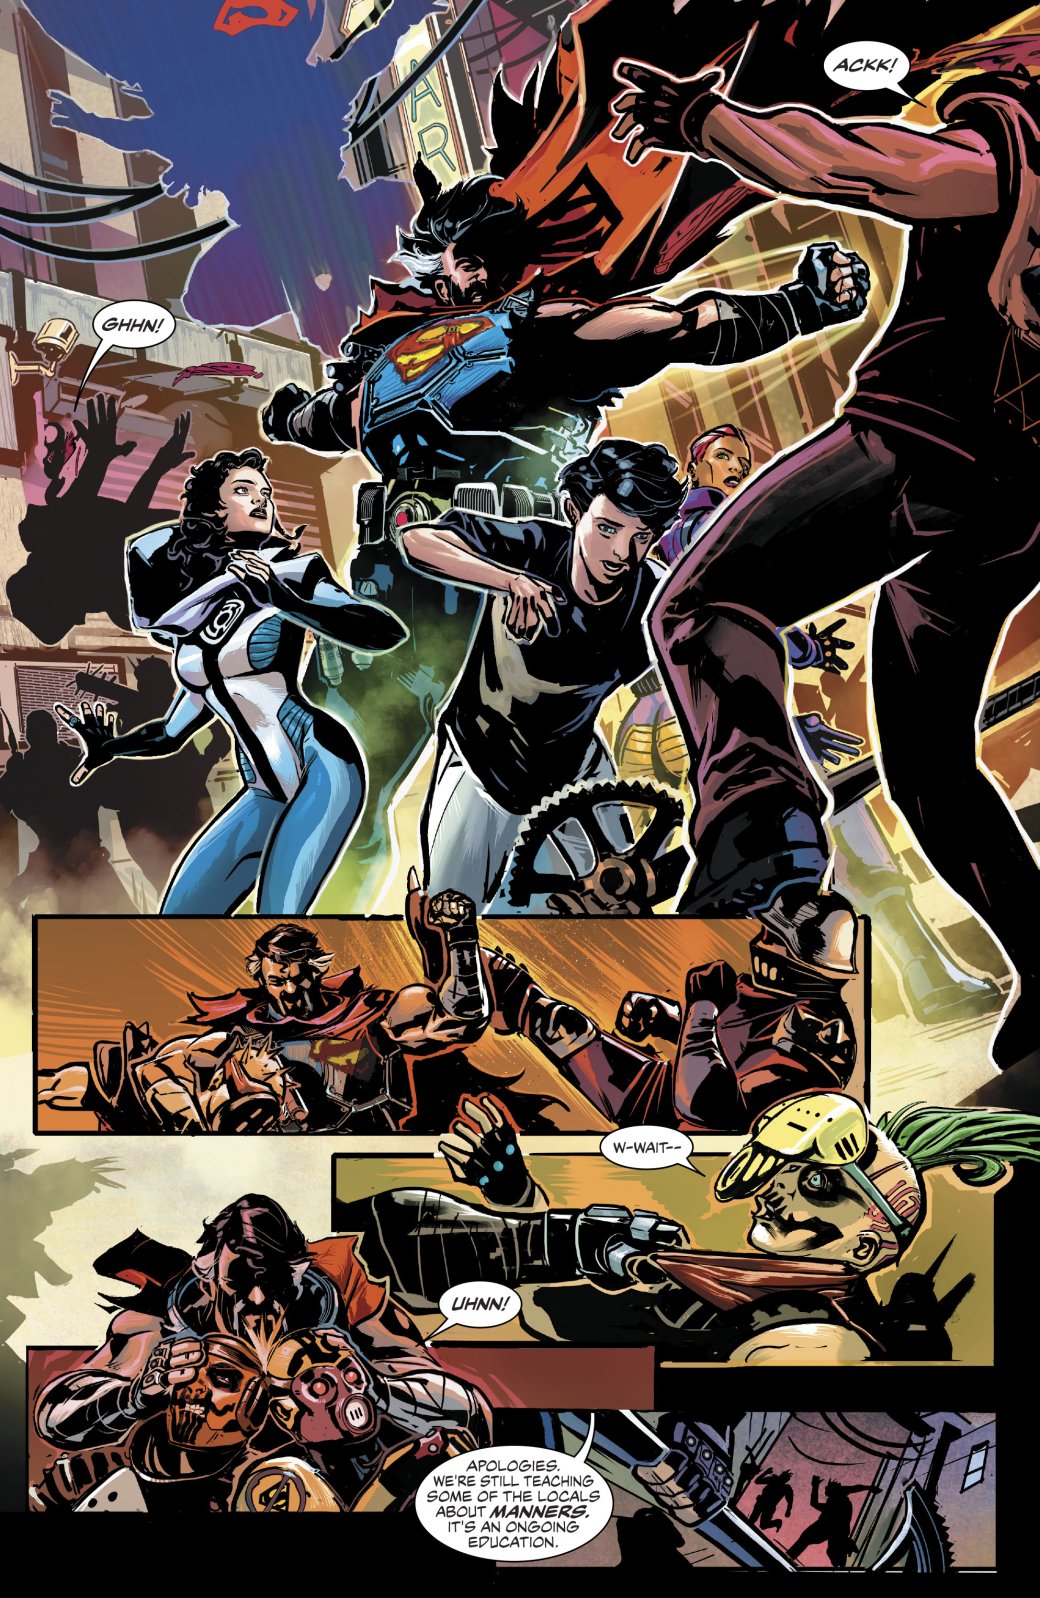 В комиксе Nightwing: The New Order представили потерявшего силы Супермена. - Изображение 1